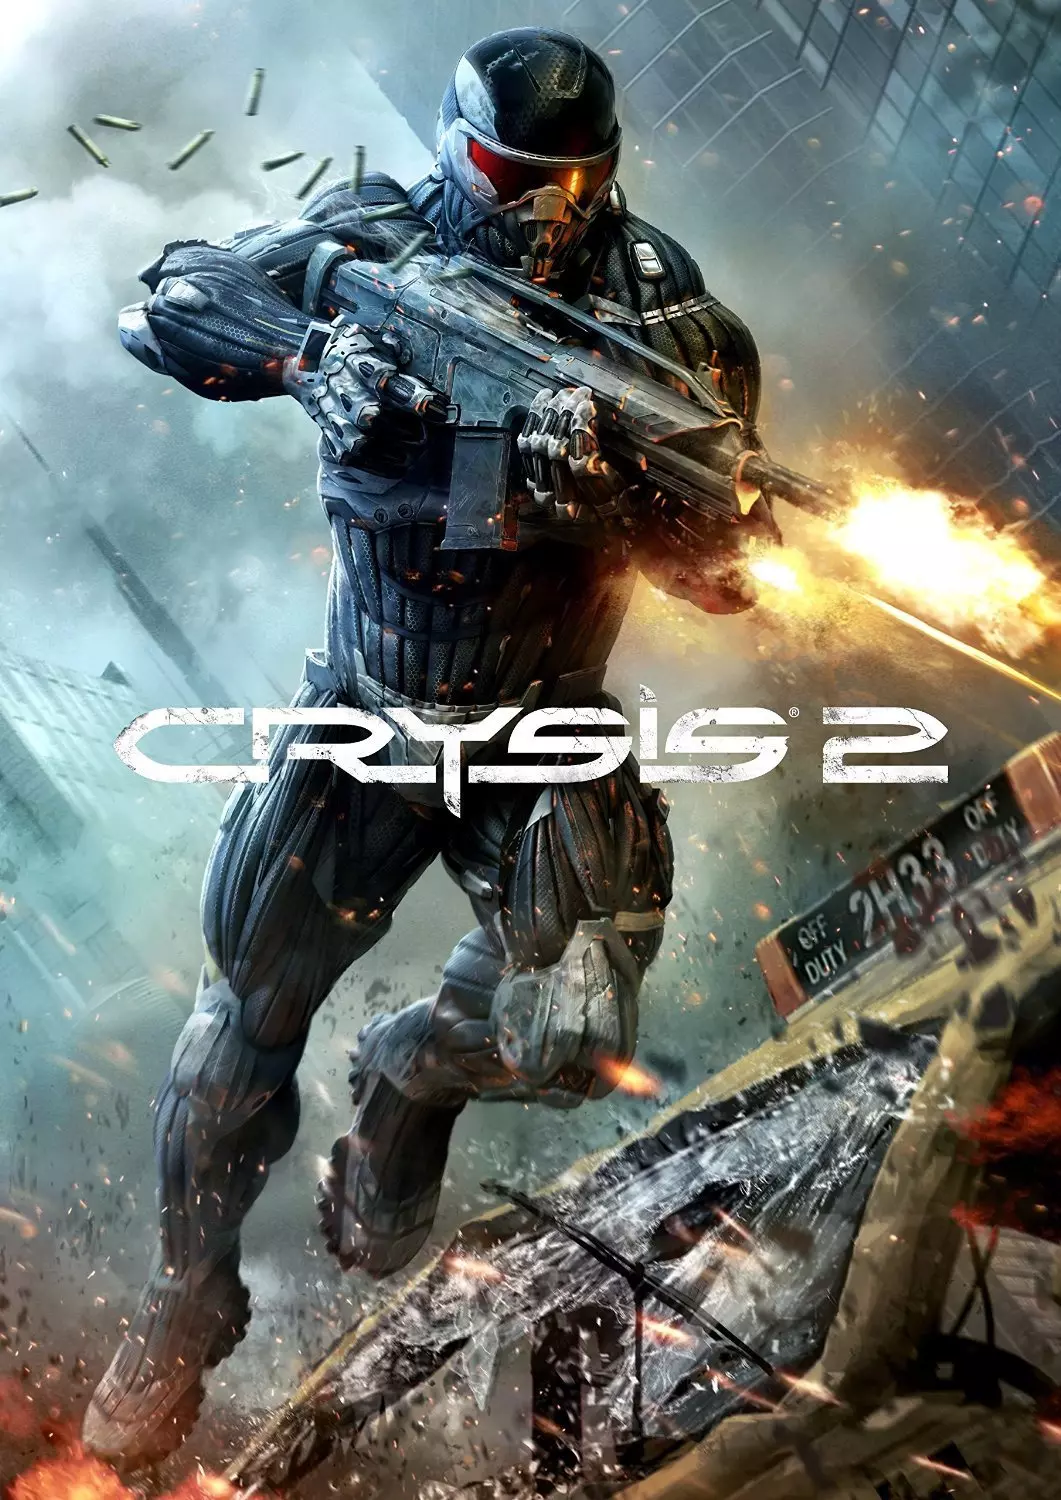 Crysis 2 (произносится [ˈkrʌɪsɪs tuː]) — мультиплатформенная компьютерная игра, научно-фантастический шутер от первого лица, разработанный немецкой компанией Crytek и изданный Electronic Arts.